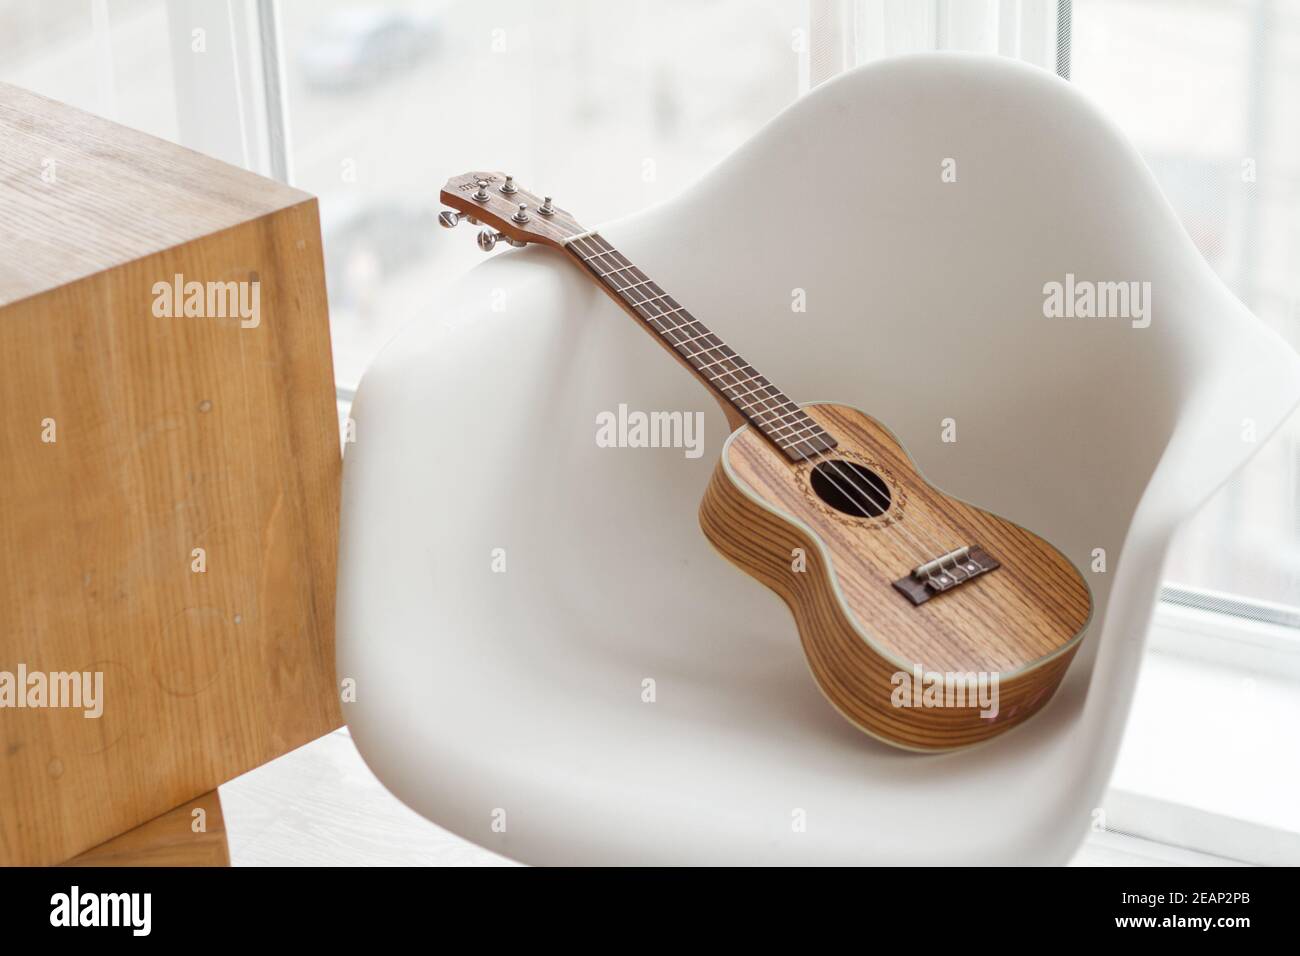 Gitarre Ukulele auf weißem Hocker, Gitarre spielen lernen, Raum kopieren  Stockfotografie - Alamy